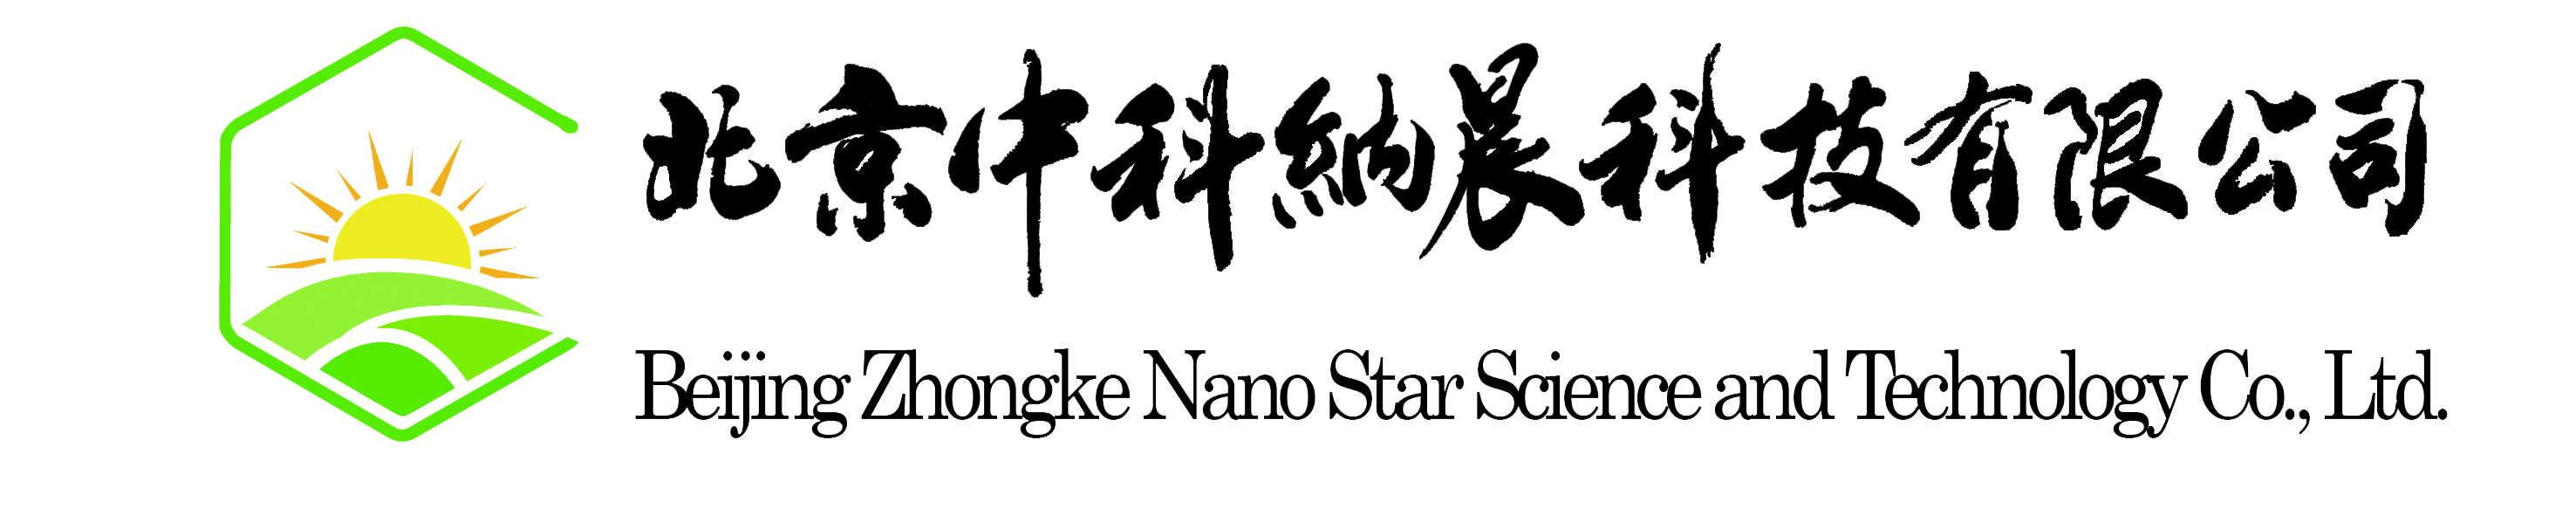 Beijing Zhongke Nano Star Science & Technology Co., Ltd-